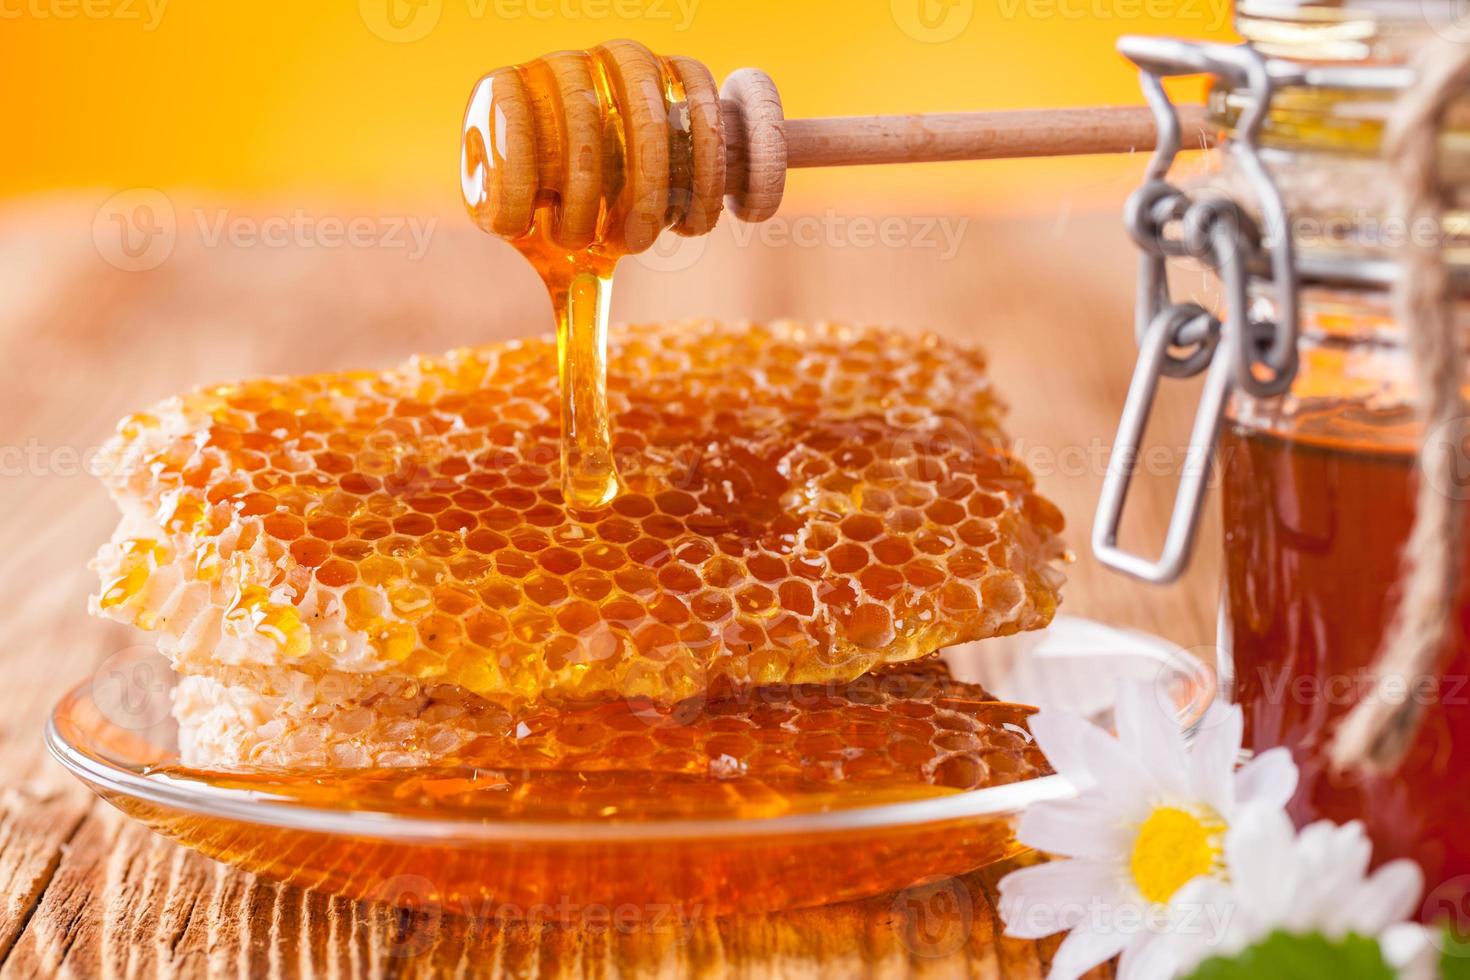 frischer Honig mit Schöpflöffel foto